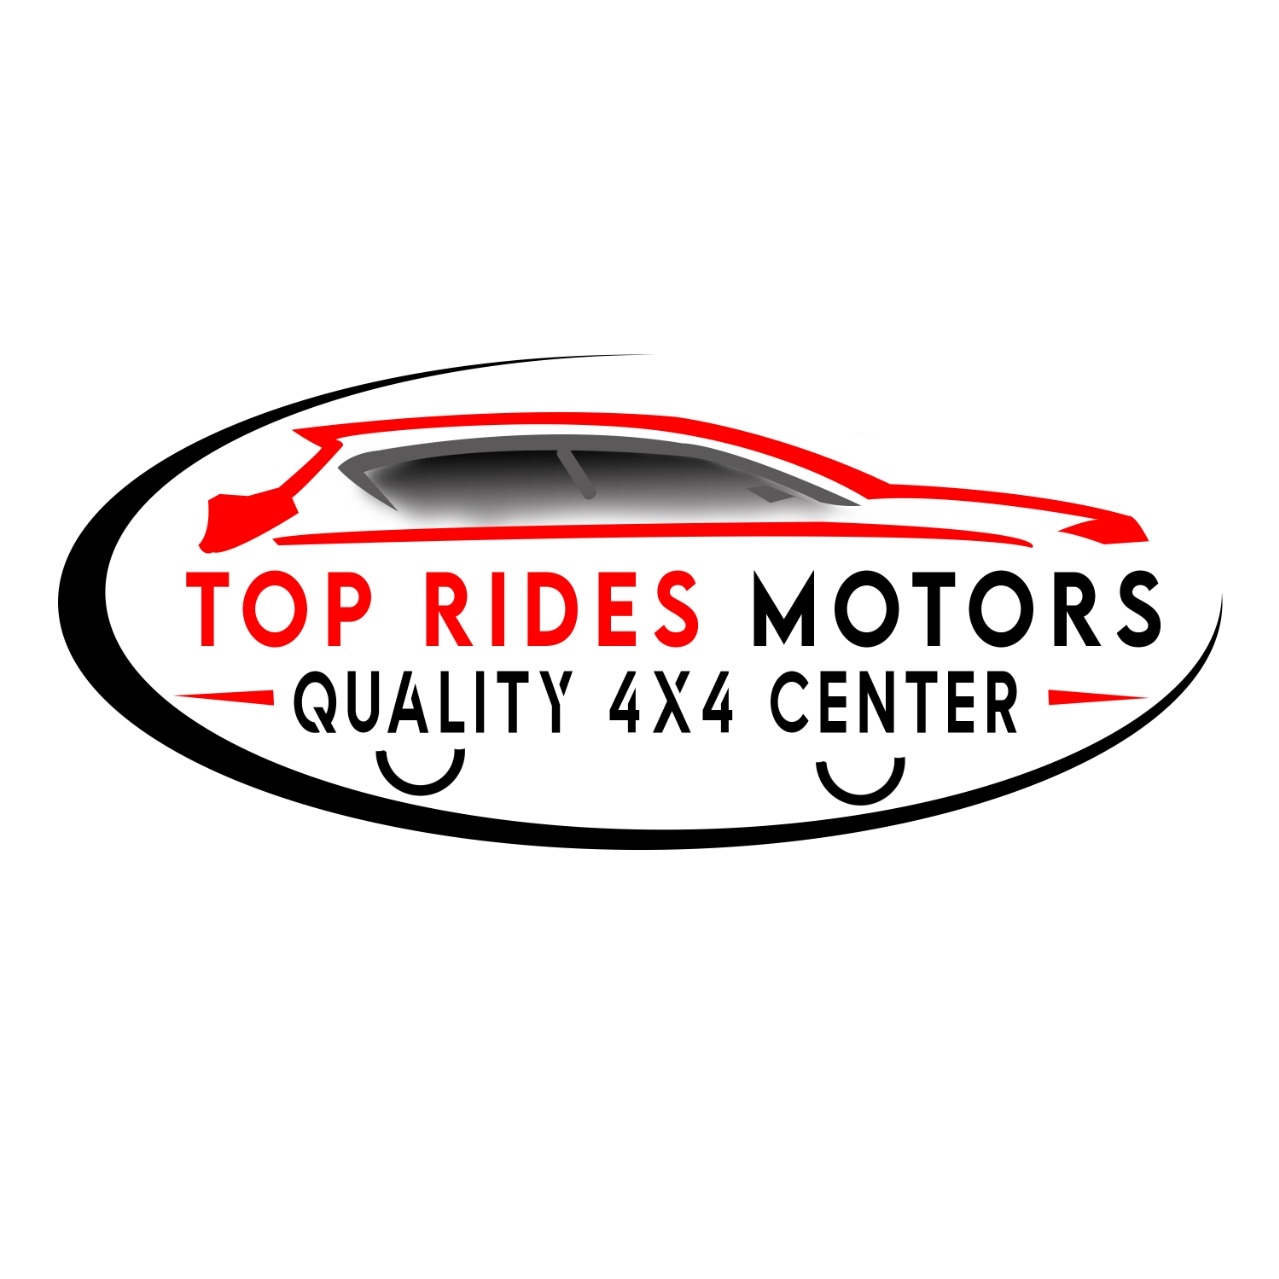 Top Rides Motors